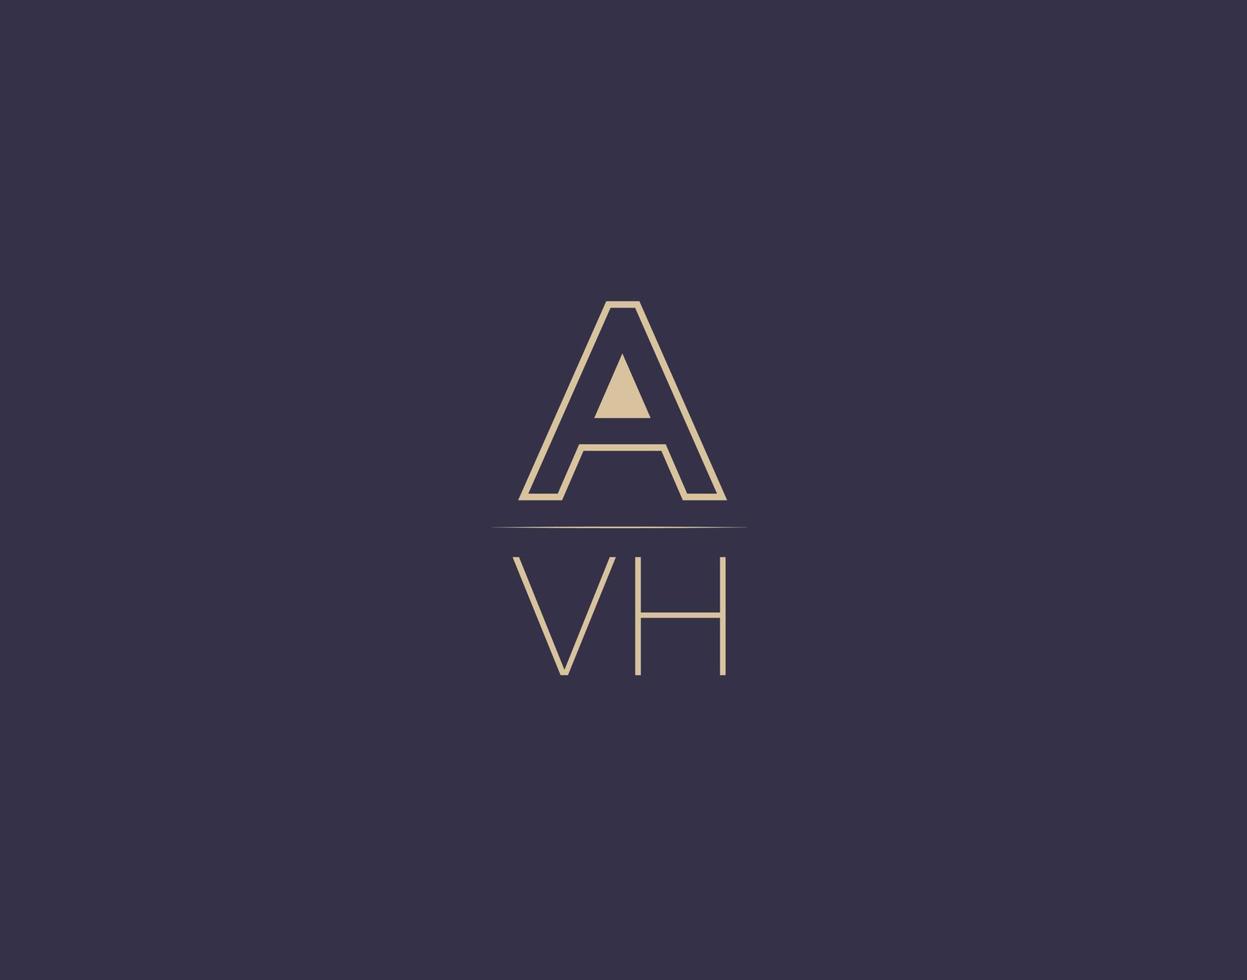 avh letter logo design imagens vetoriais minimalistas modernas vetor